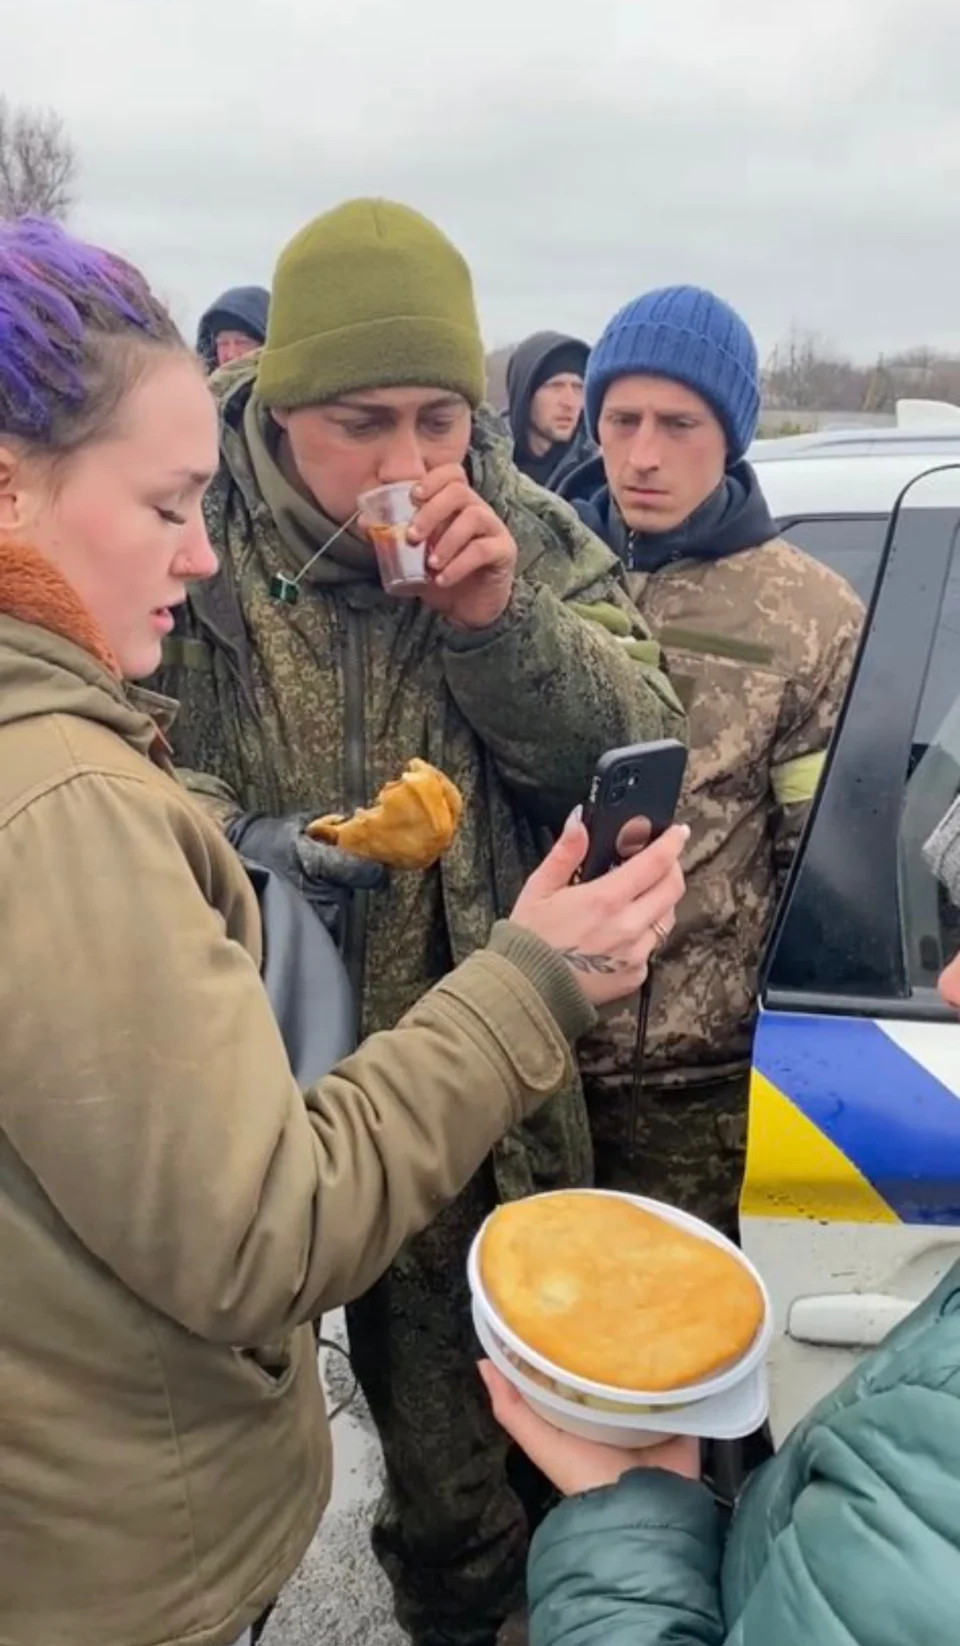 asomadetodosafetos.com - Jornalista filma ucranianos alimentando soldado russo que se rendeu. Assista!